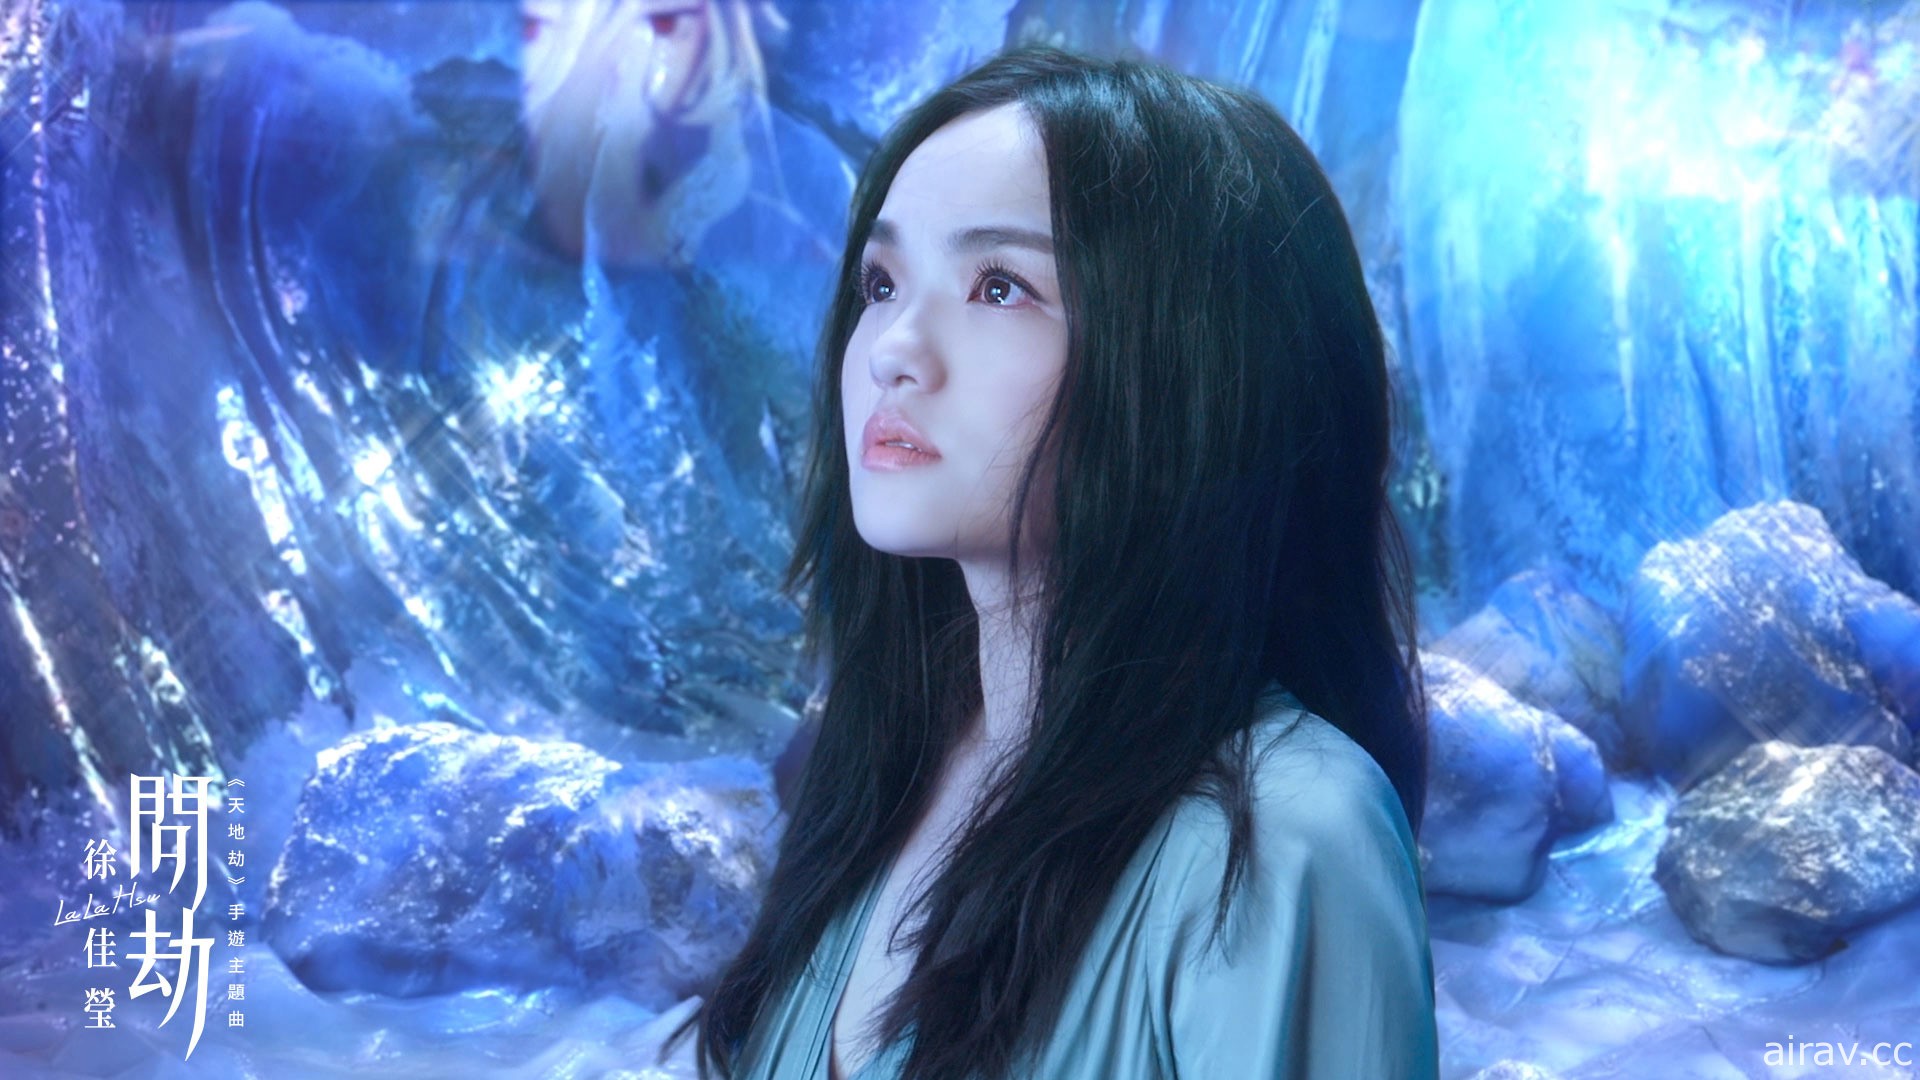 《天地劫》主題曲「問劫」MV 曝光 邀請金曲歌后 LaLa 徐佳瑩與導演比爾賈合力打造